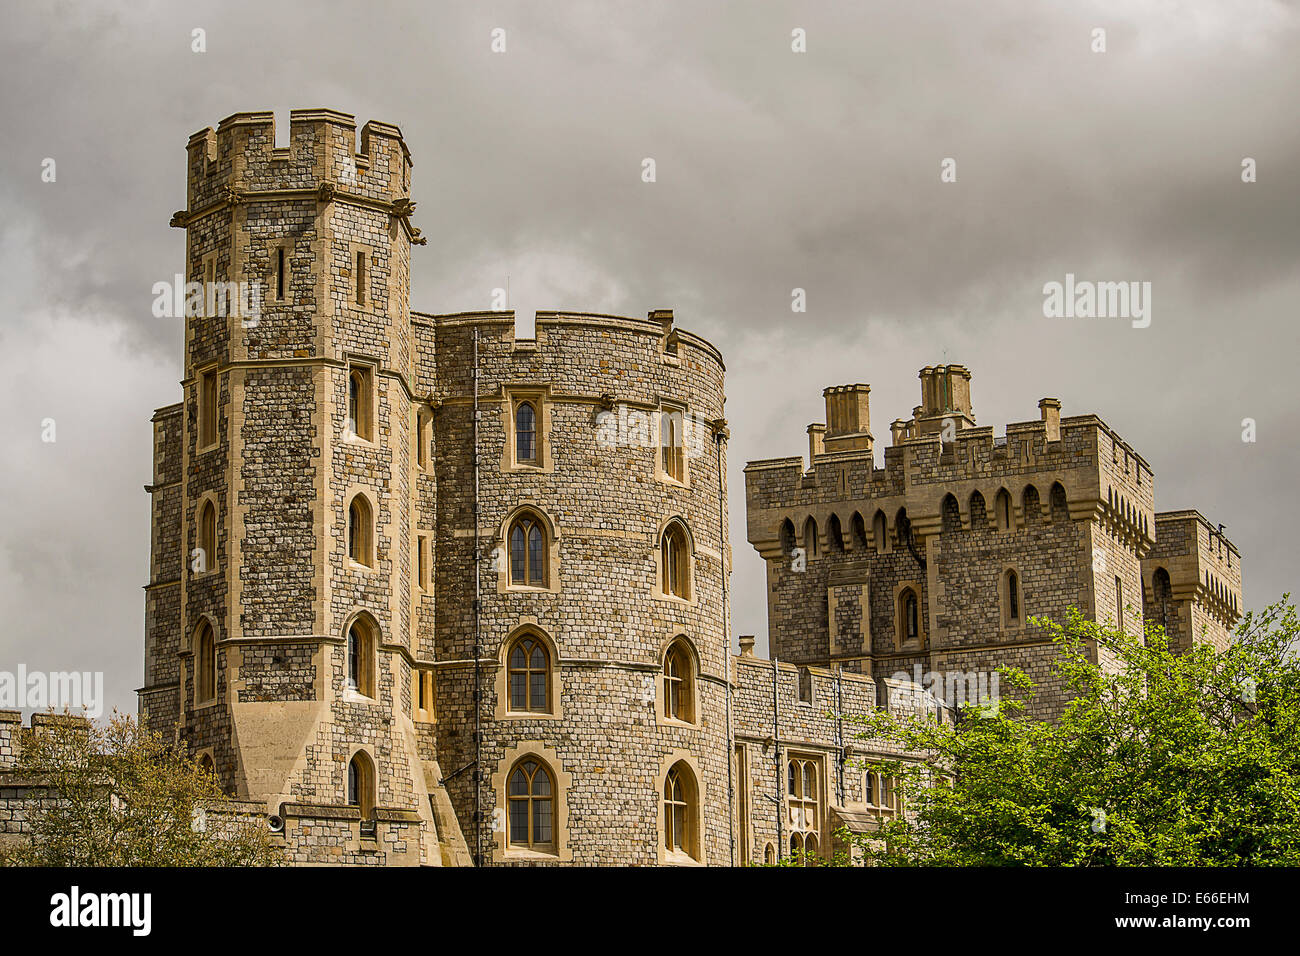 Bild von der schönen Schloss Windsor in England. Stockfoto